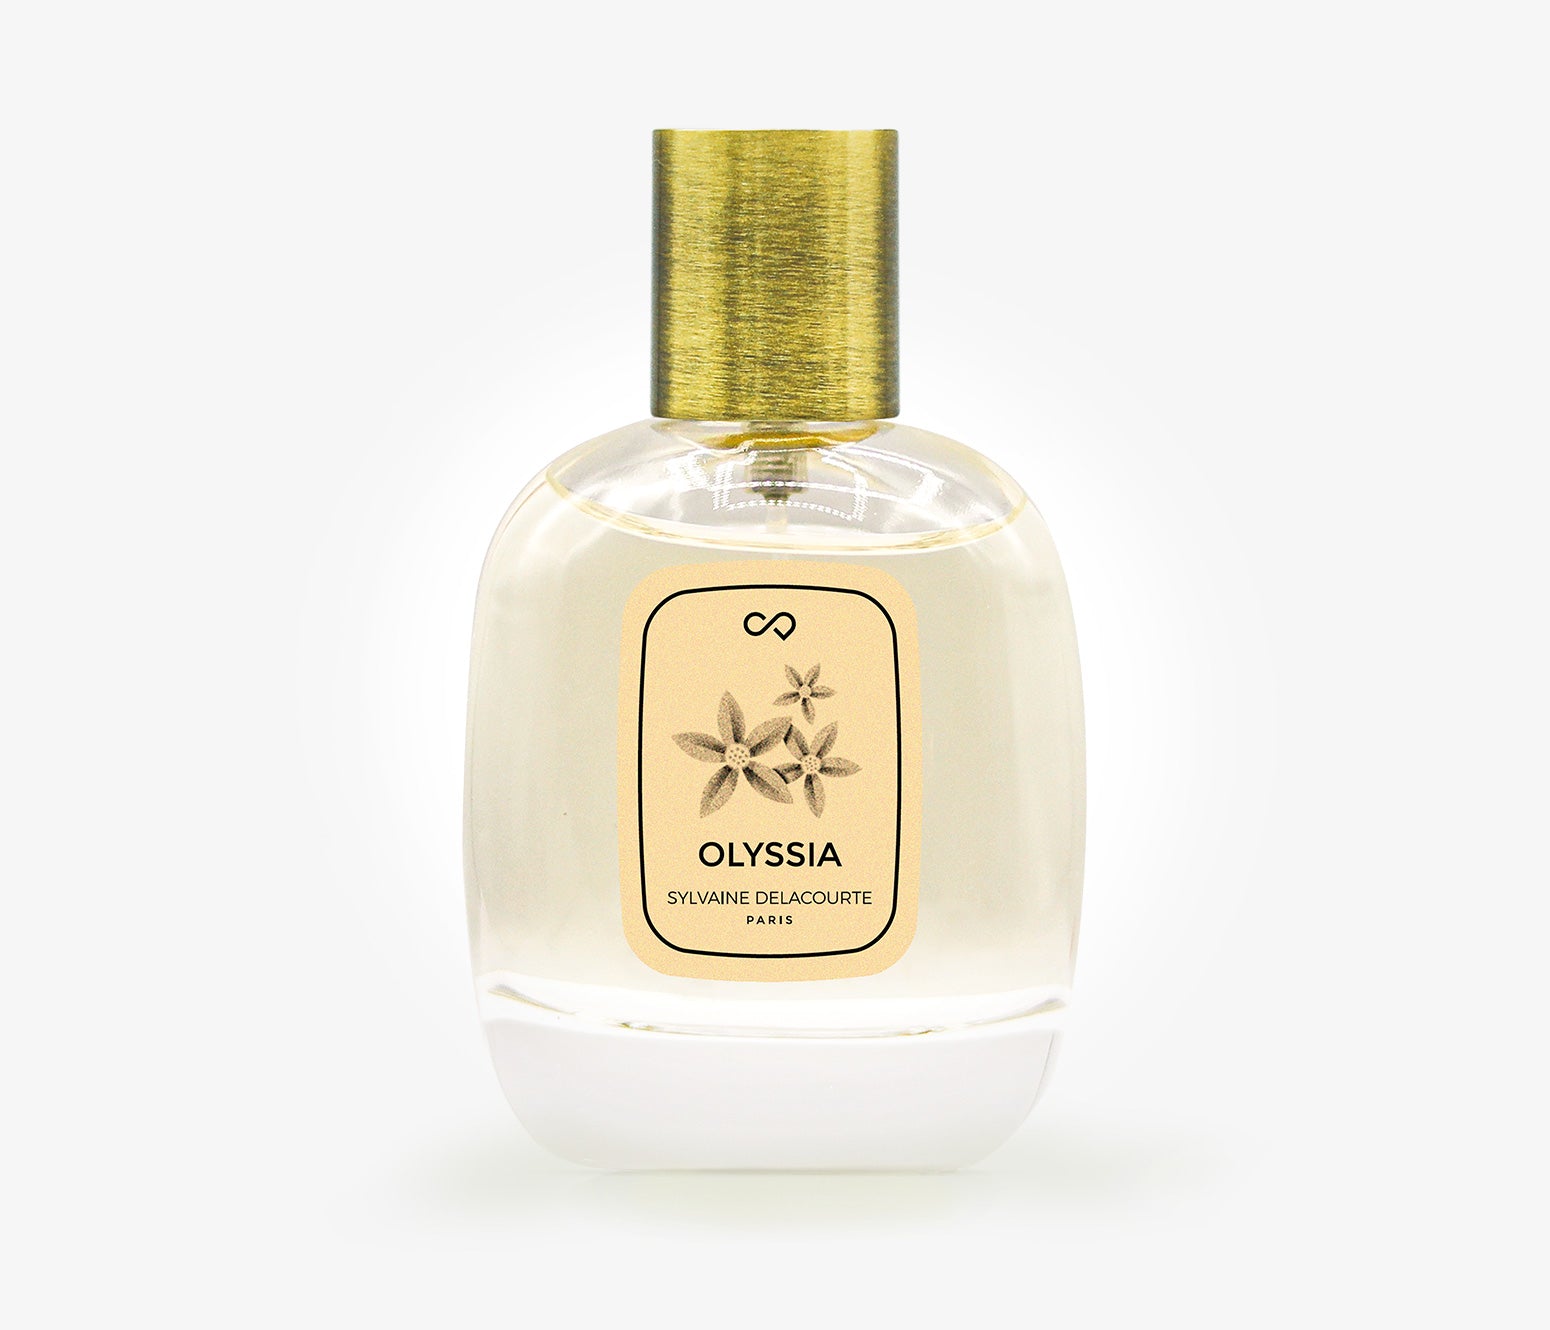 Sylvaine Delacourte - Olyssia - 30ml - EJH001 - product image - Fragrance - Les Senteurs